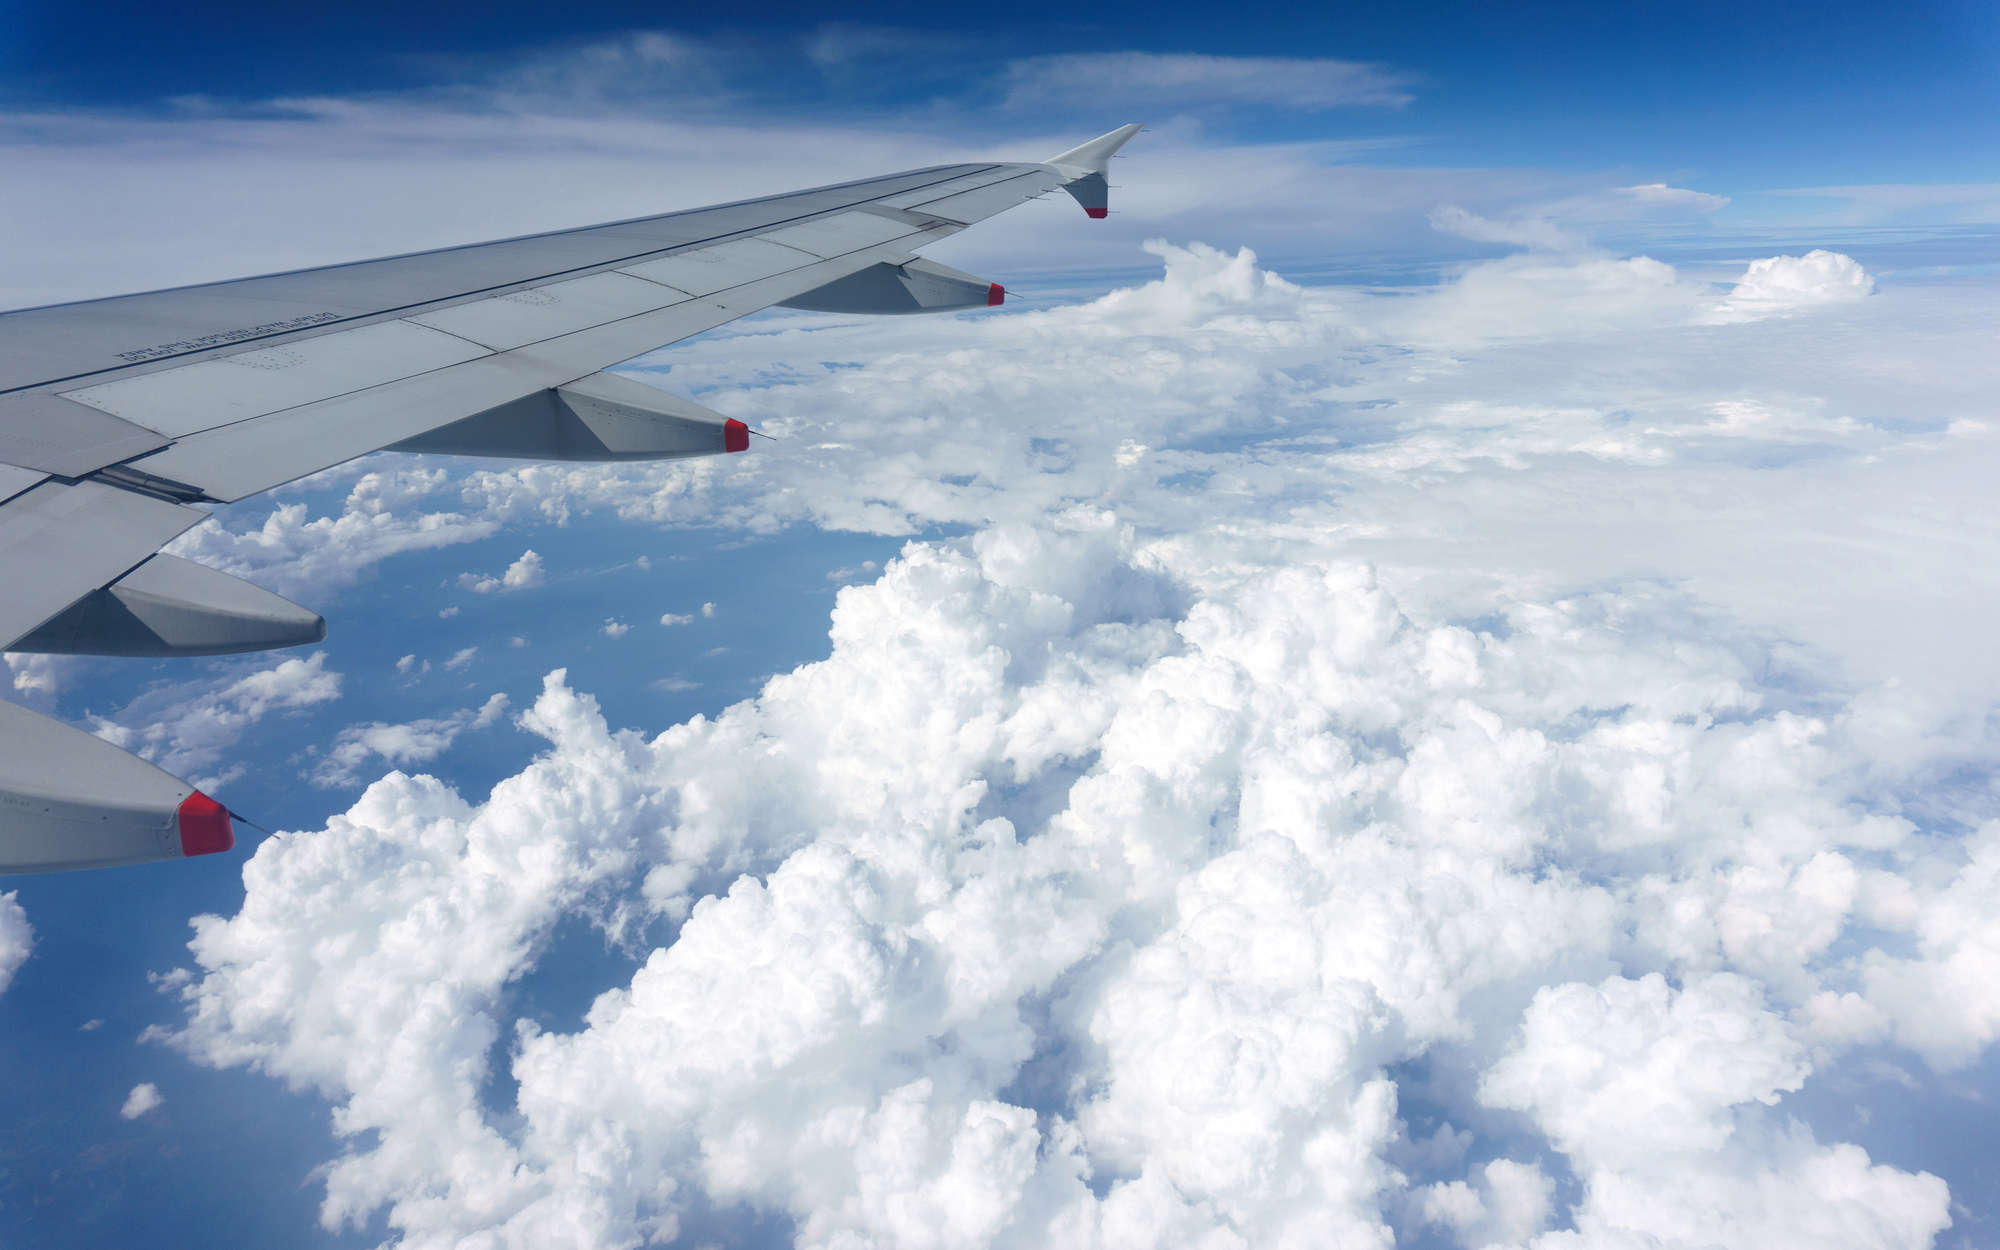             Fotomural Avión sobre las nubes - tejido no tejido liso de alta calidad
        